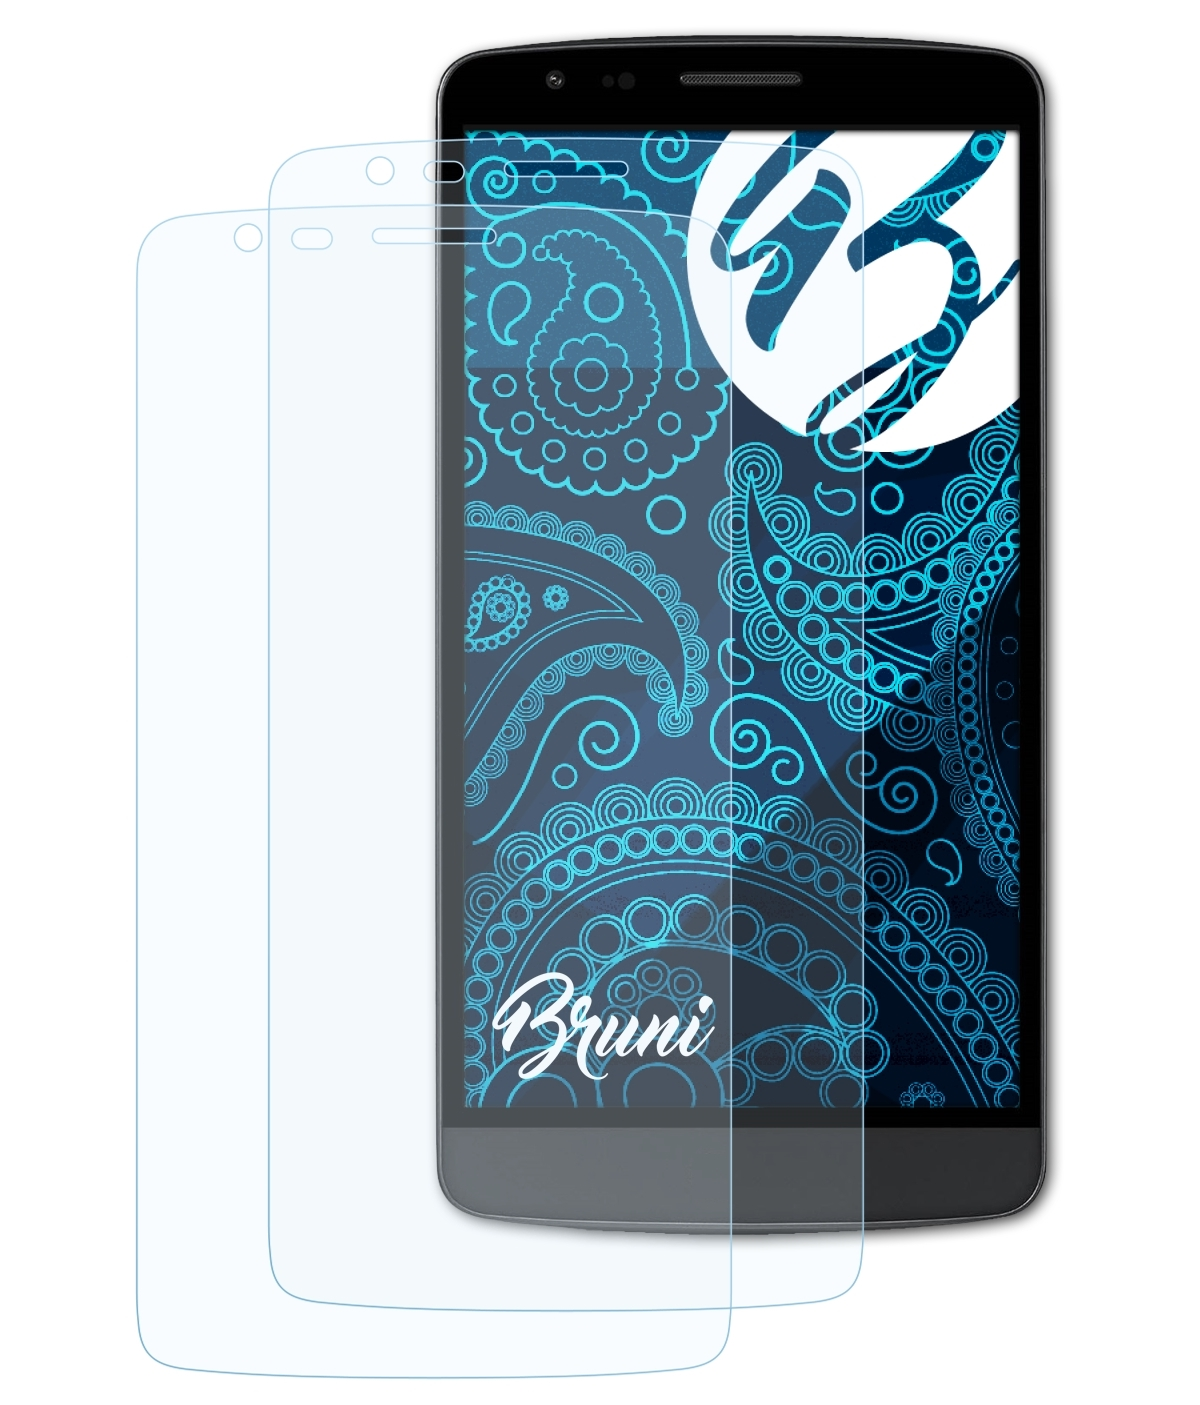 G3 Basics-Clear BRUNI 2x Schutzfolie(für LG Stylus)